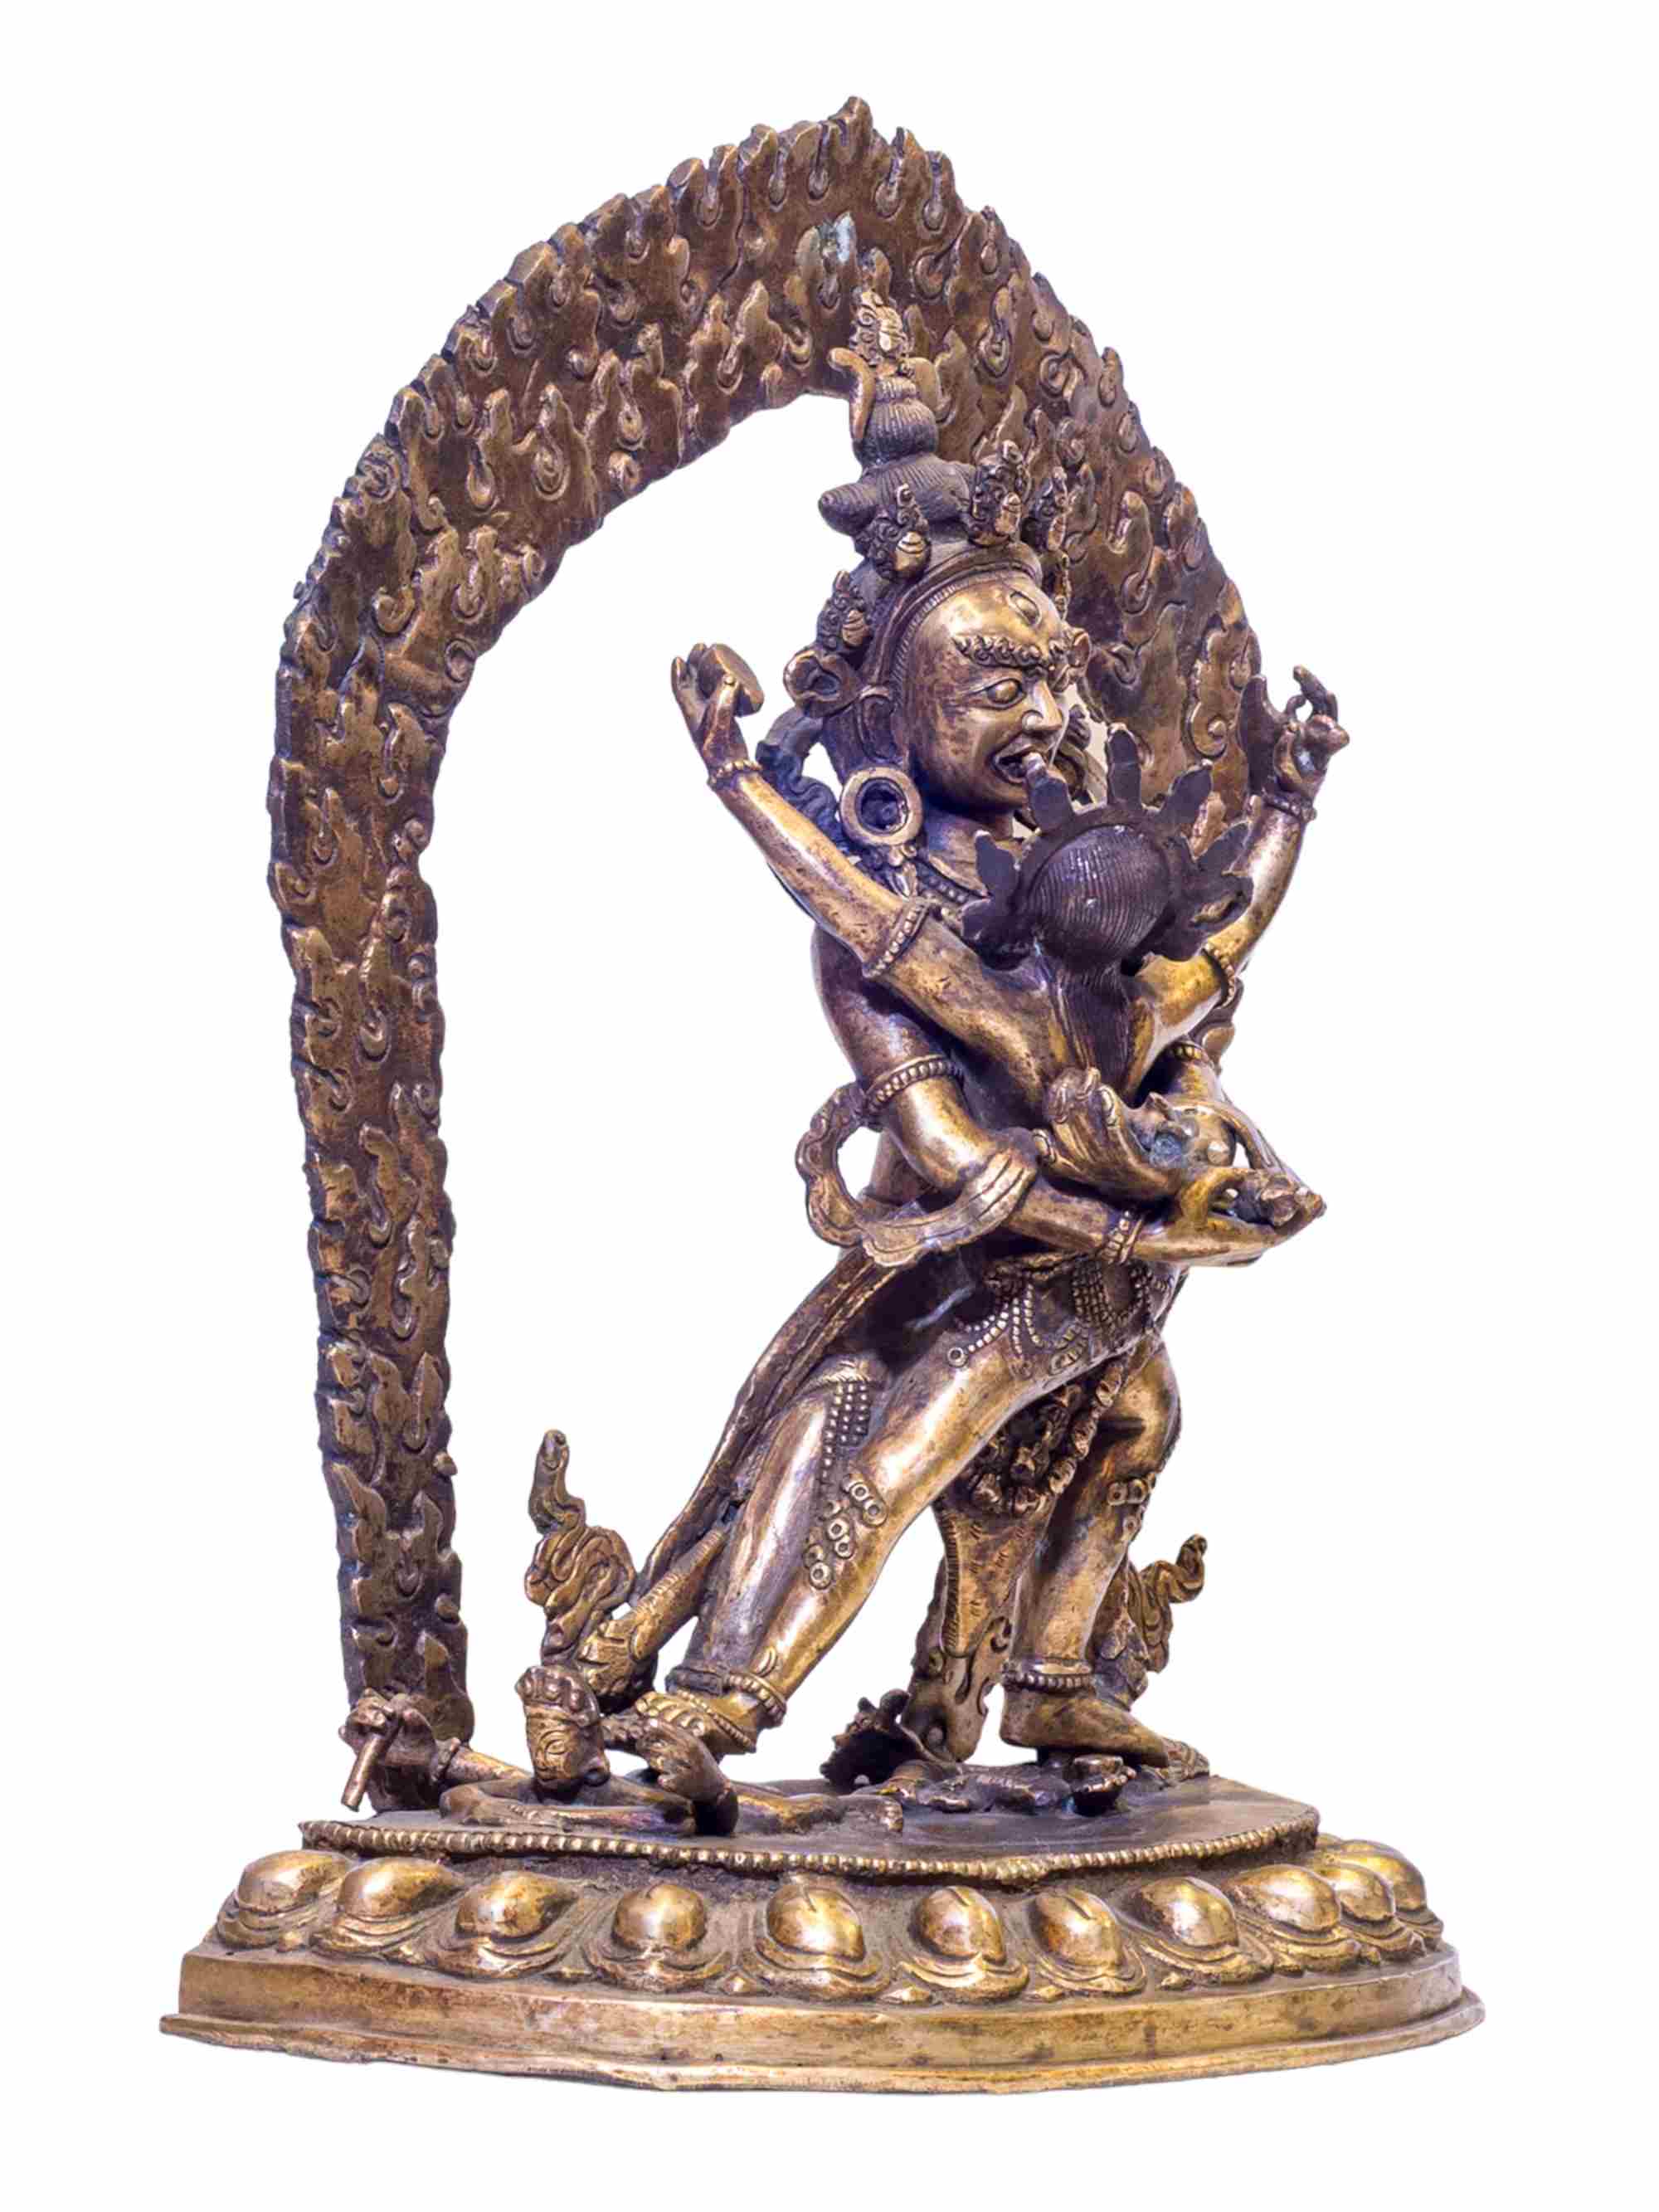 Buddhist Handmade Statue Of Chakrasamvara- Heruka, antique Finishing, gold Plated, rare Find